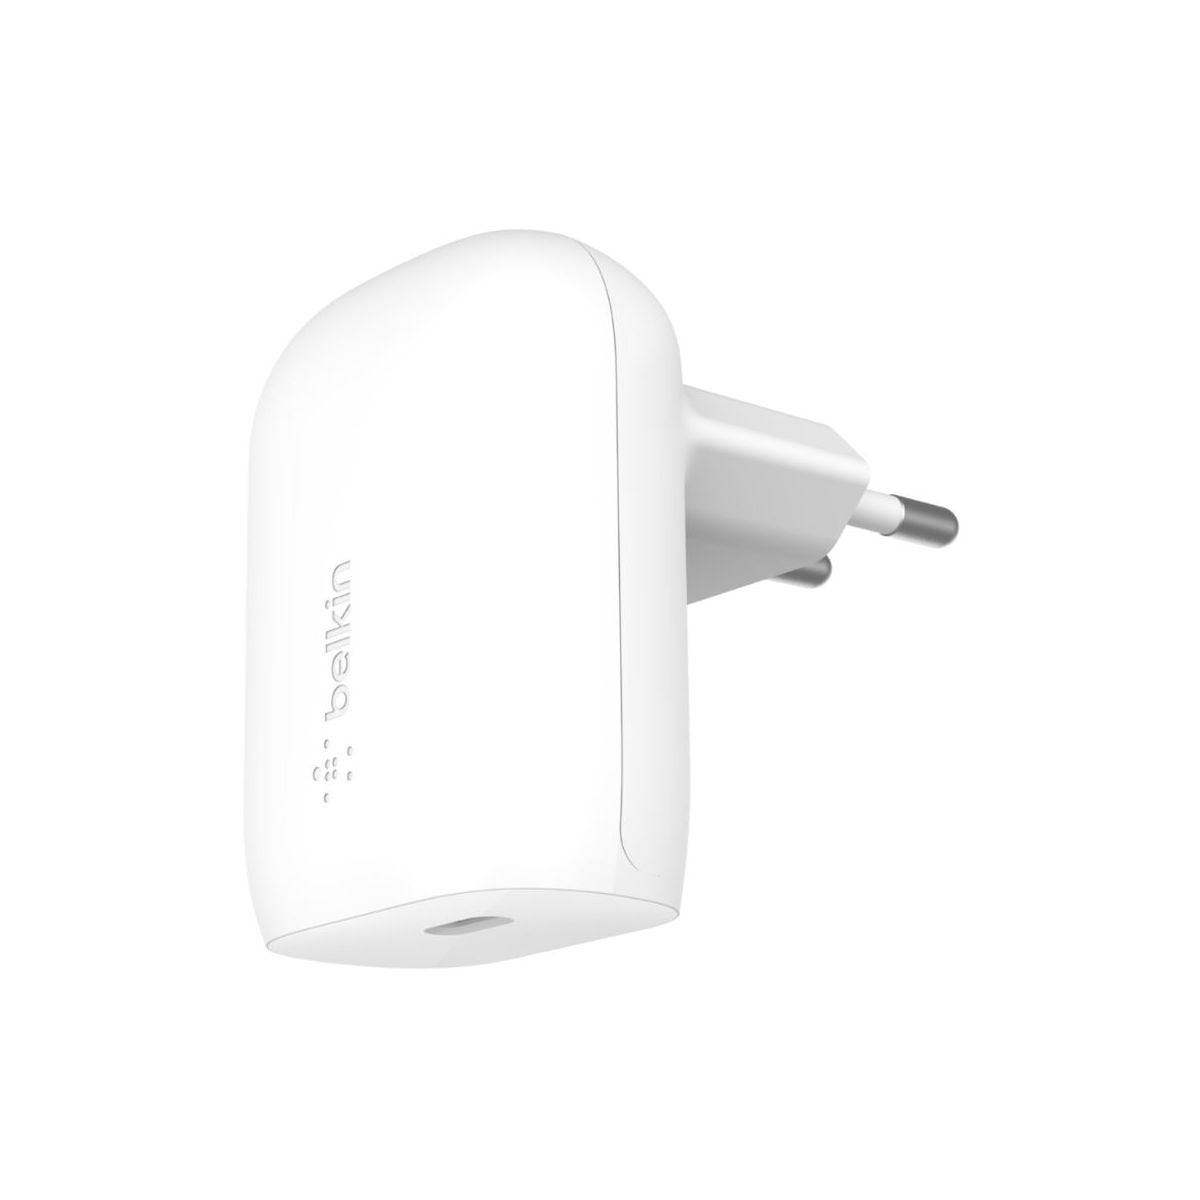 Adaptateur secteur USB-C 30 W - Apple (BE)